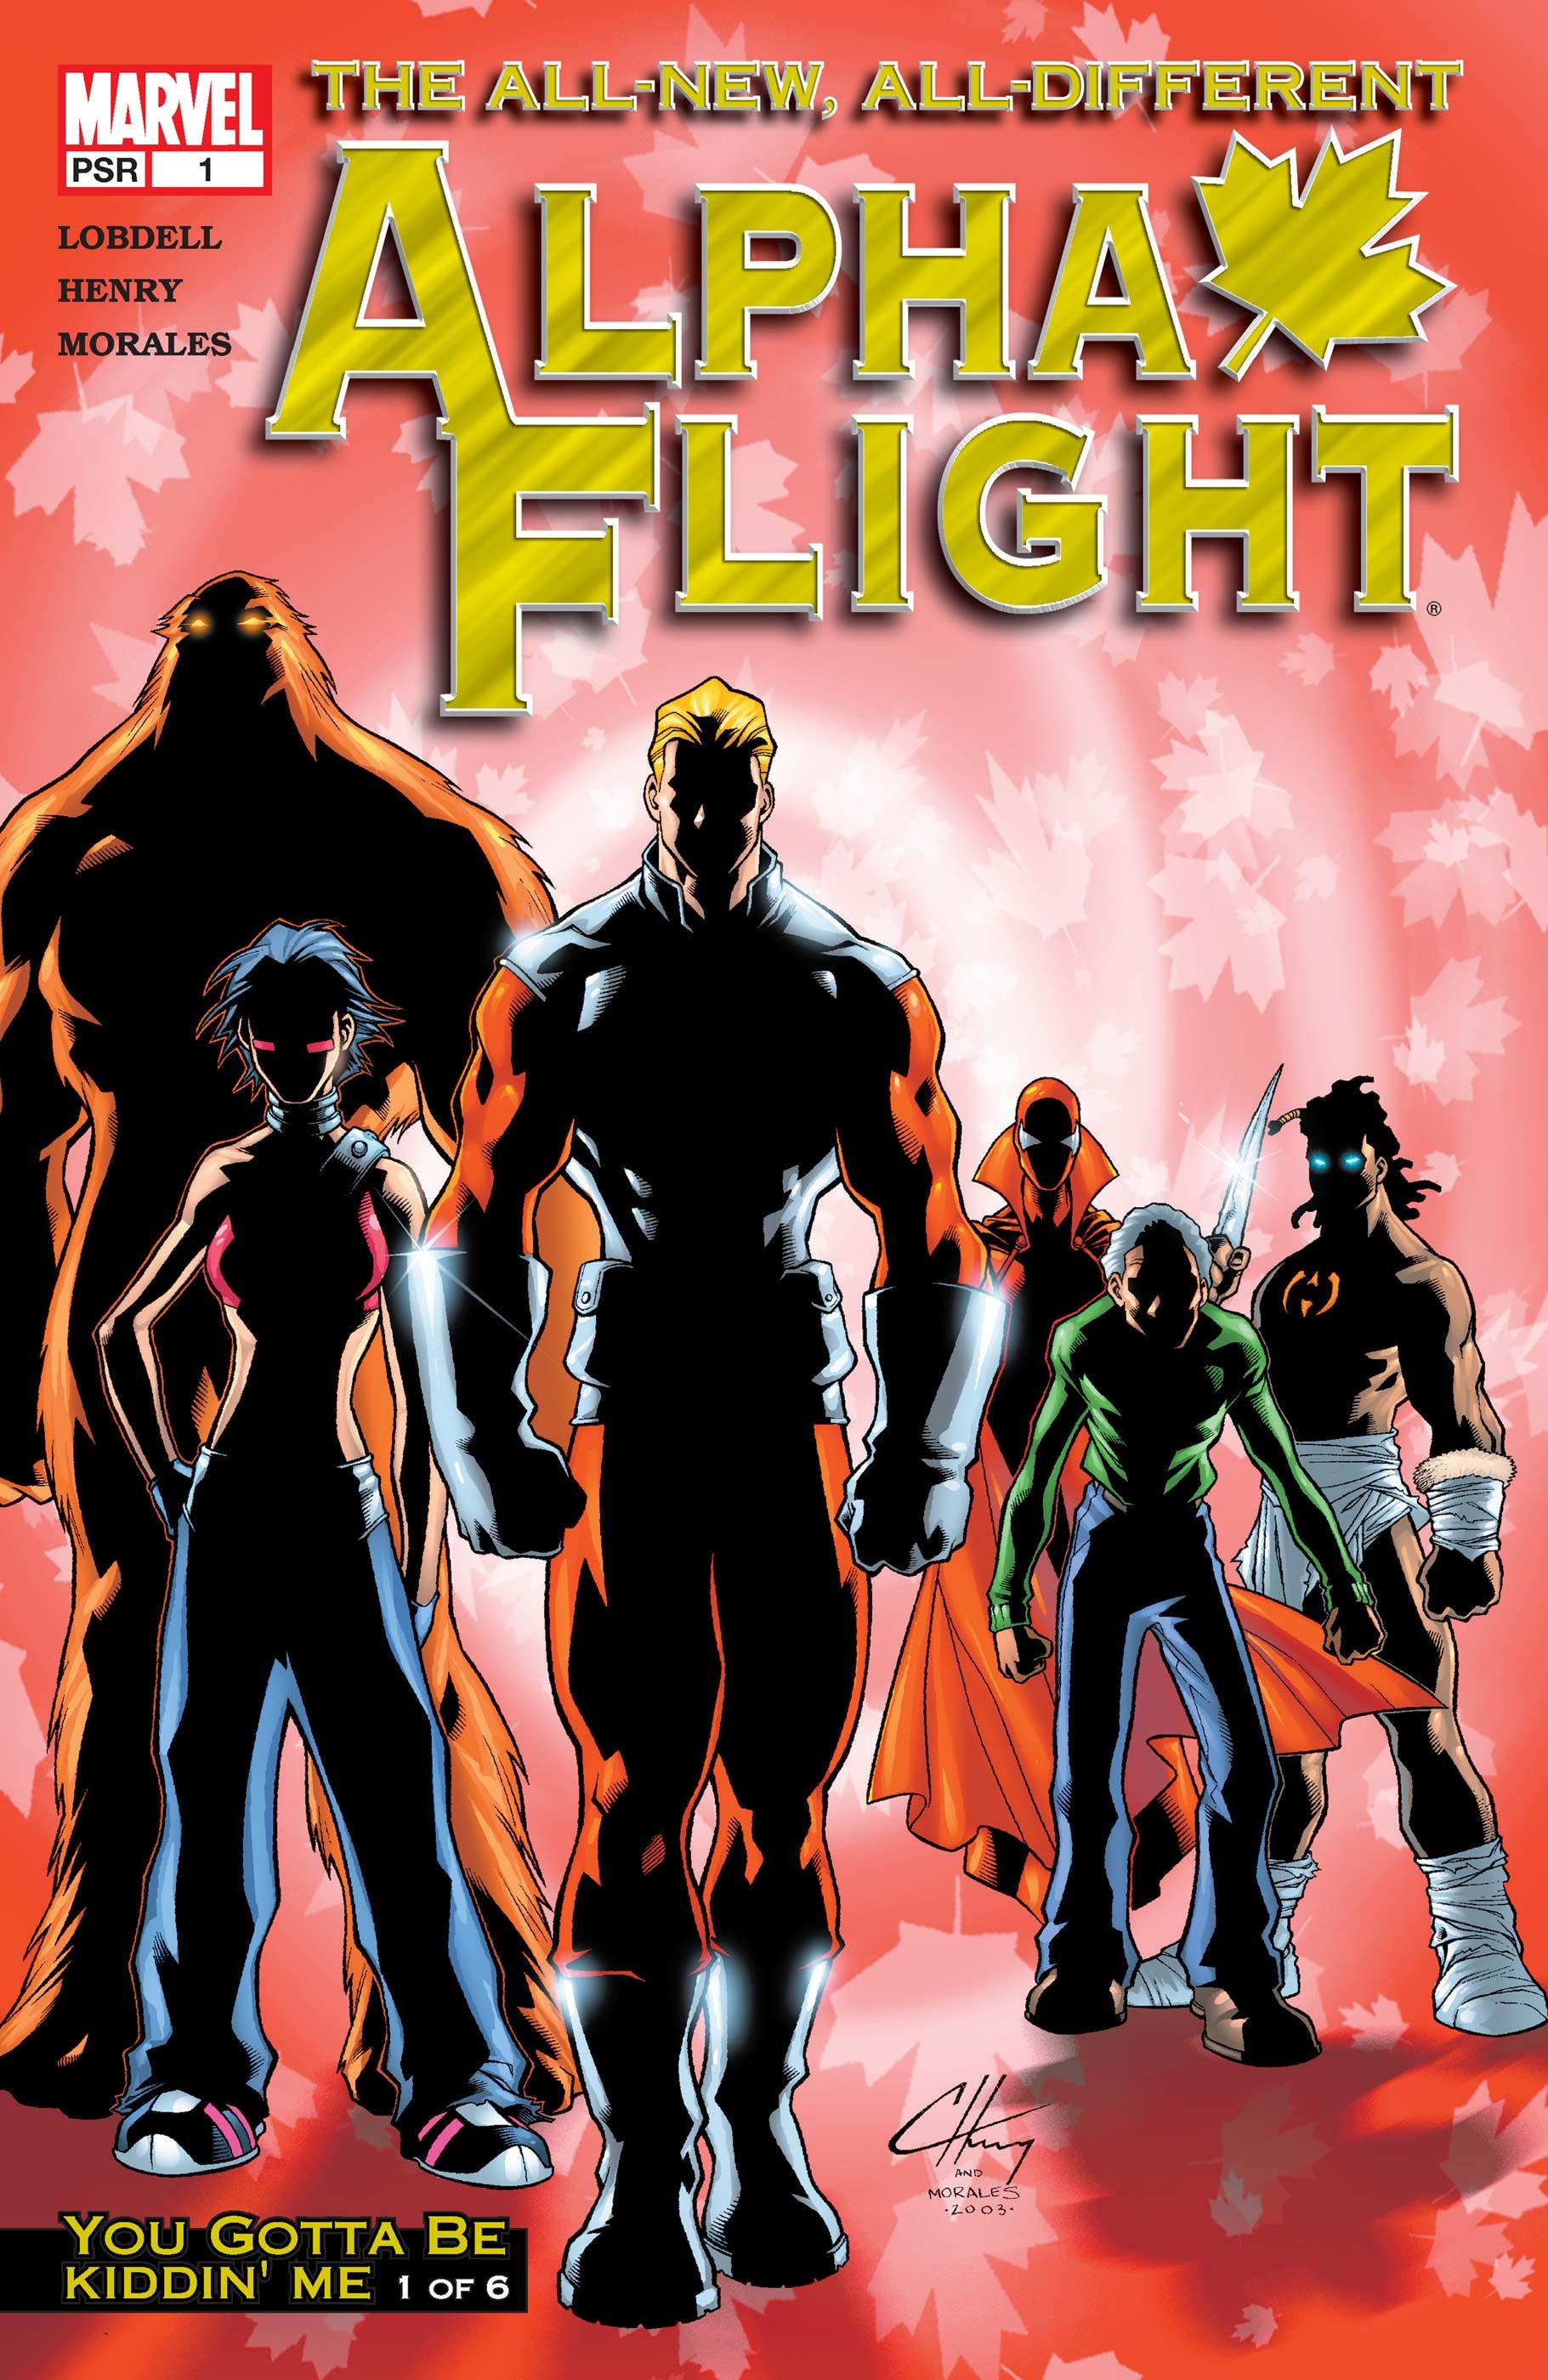 ALPHA FLIGHT #1#2#3#4#5#6 - MARVEL COMICS (2004)